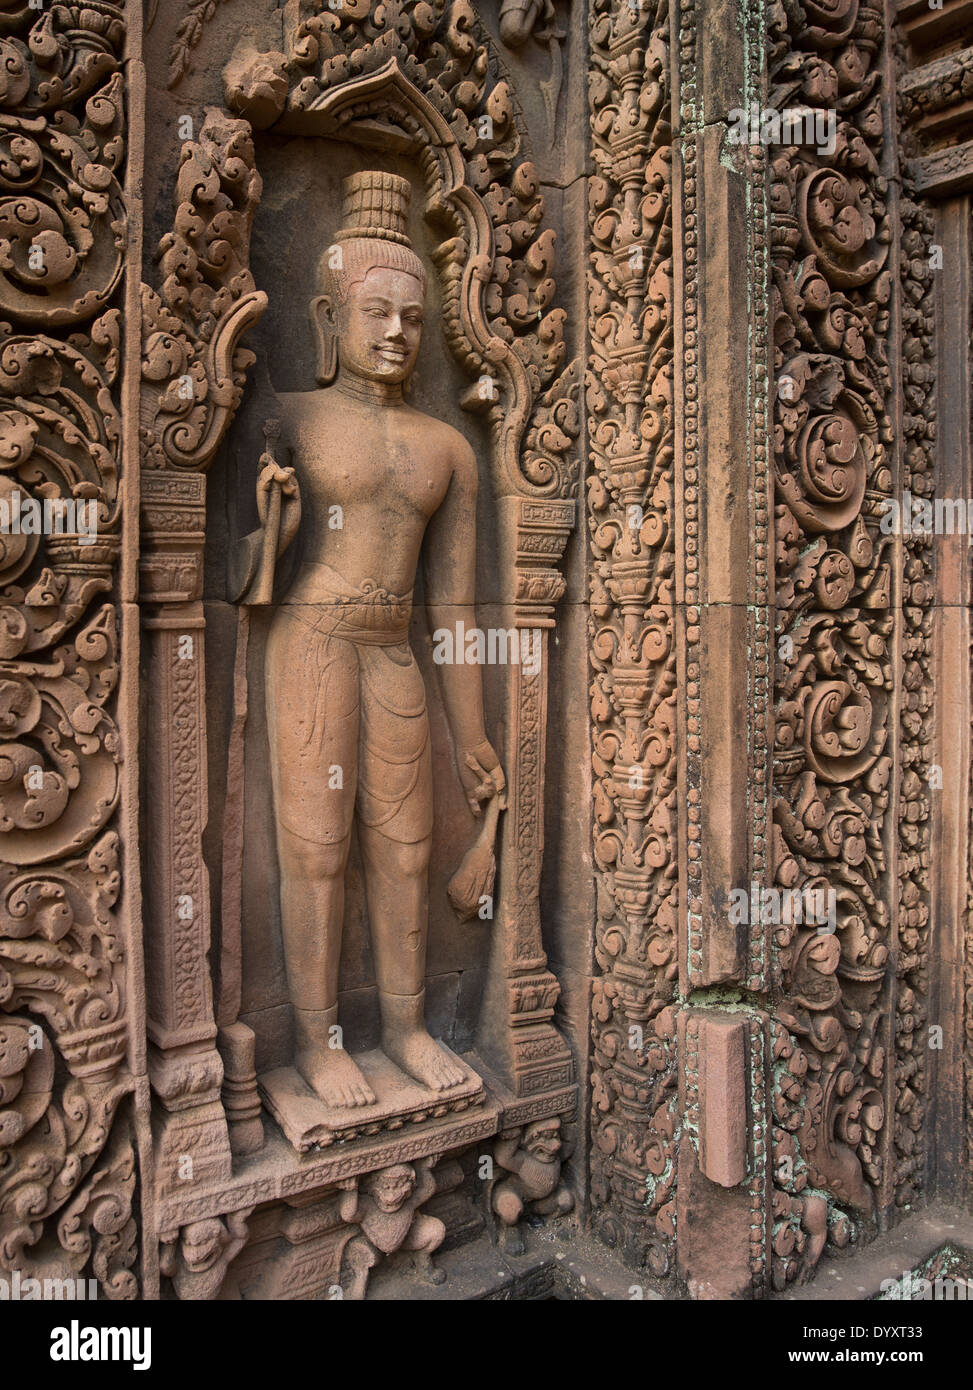 Banteay Srei templo hindú dedicado a Shiva. En Siem Reap, Camboya Foto de stock